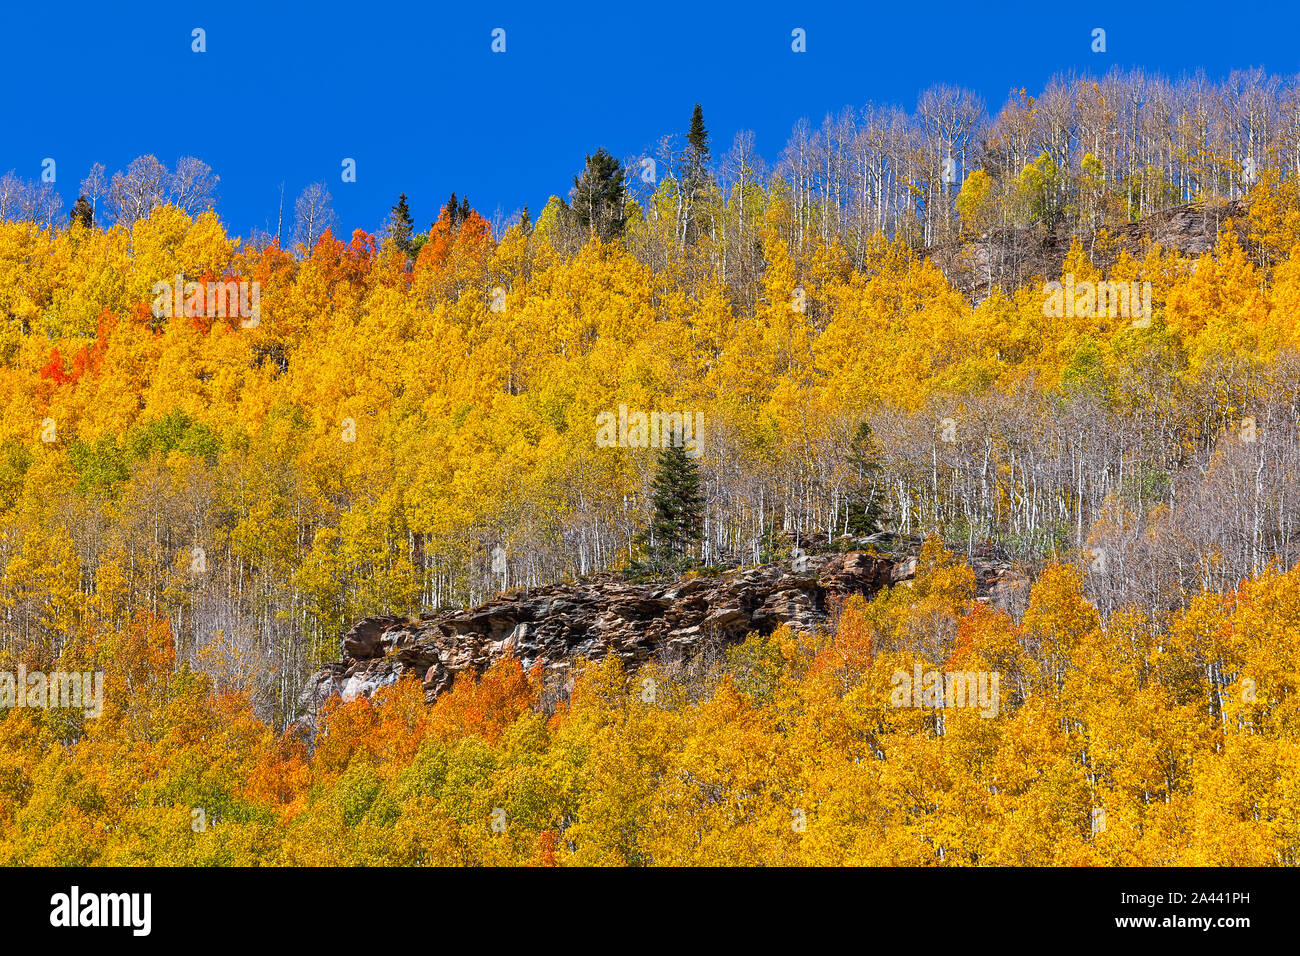 Im Herbst ragt in der Nähe von Silverton, Colorado, eine einone Kiefer in einem Wald aus hellgelben Aspen-Bäumen hervor Stockfoto